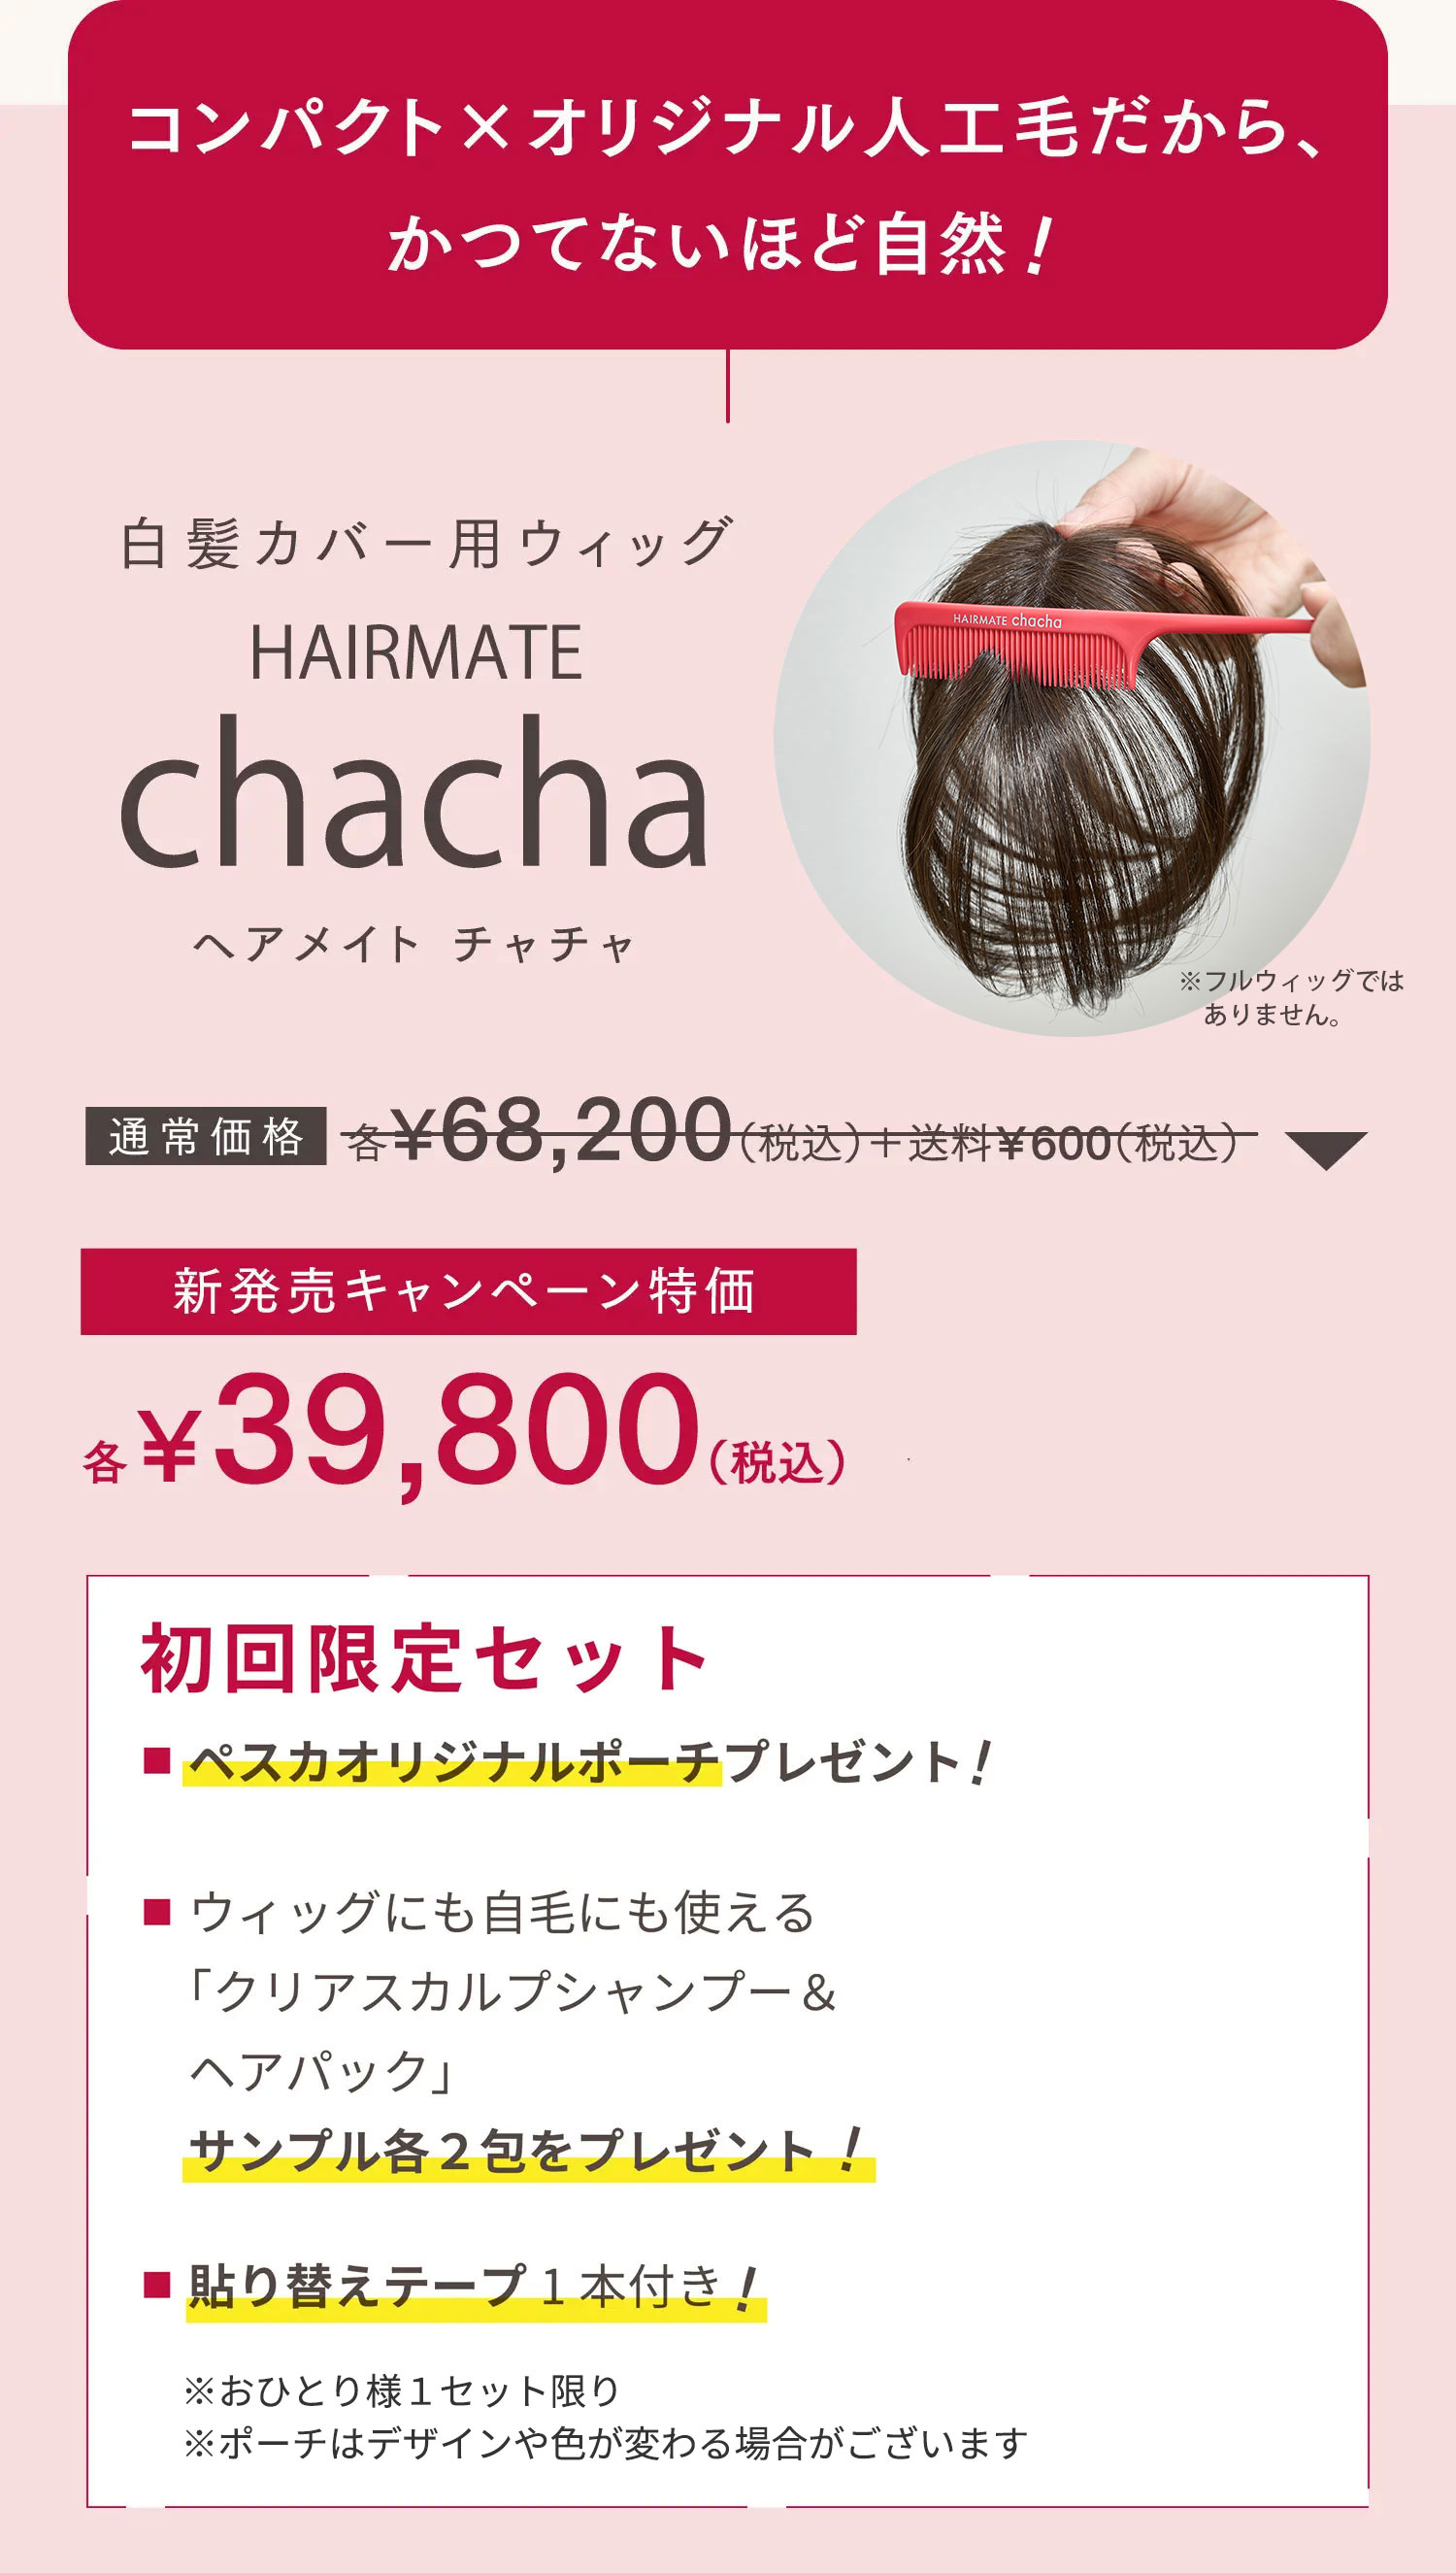 ☆オーダーメイド級ウィッグ☆ HAIRMATE chacha